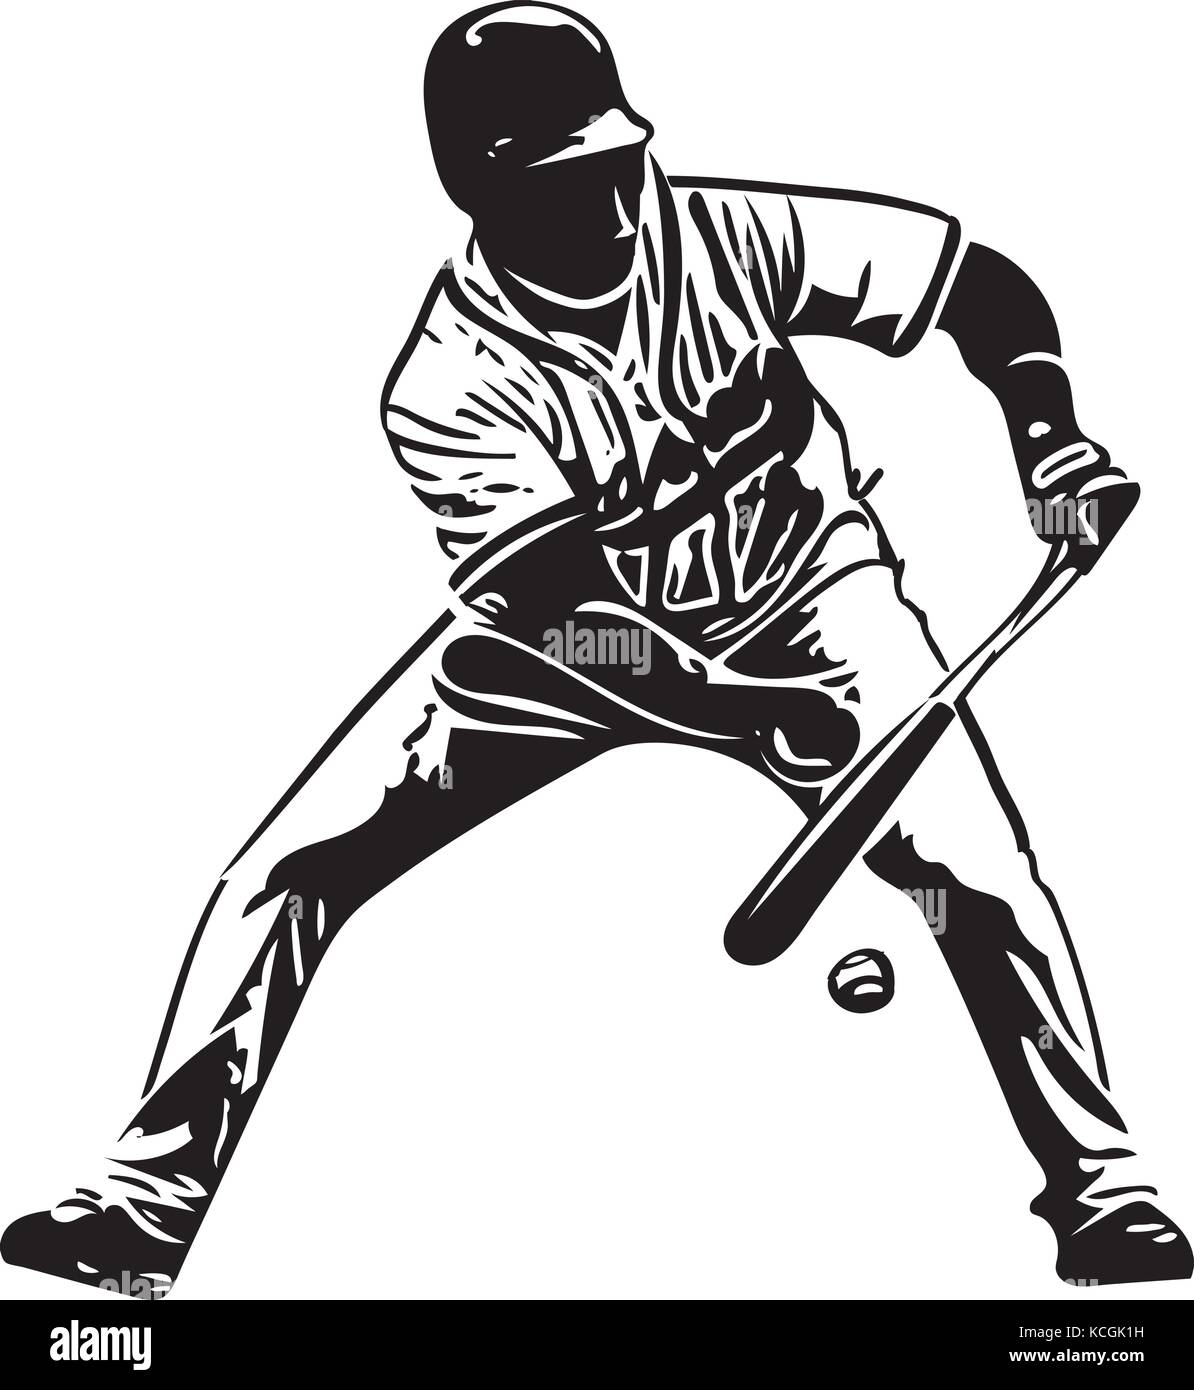 Illustration de joueur de baseball jouant avec abstract background Illustration de Vecteur